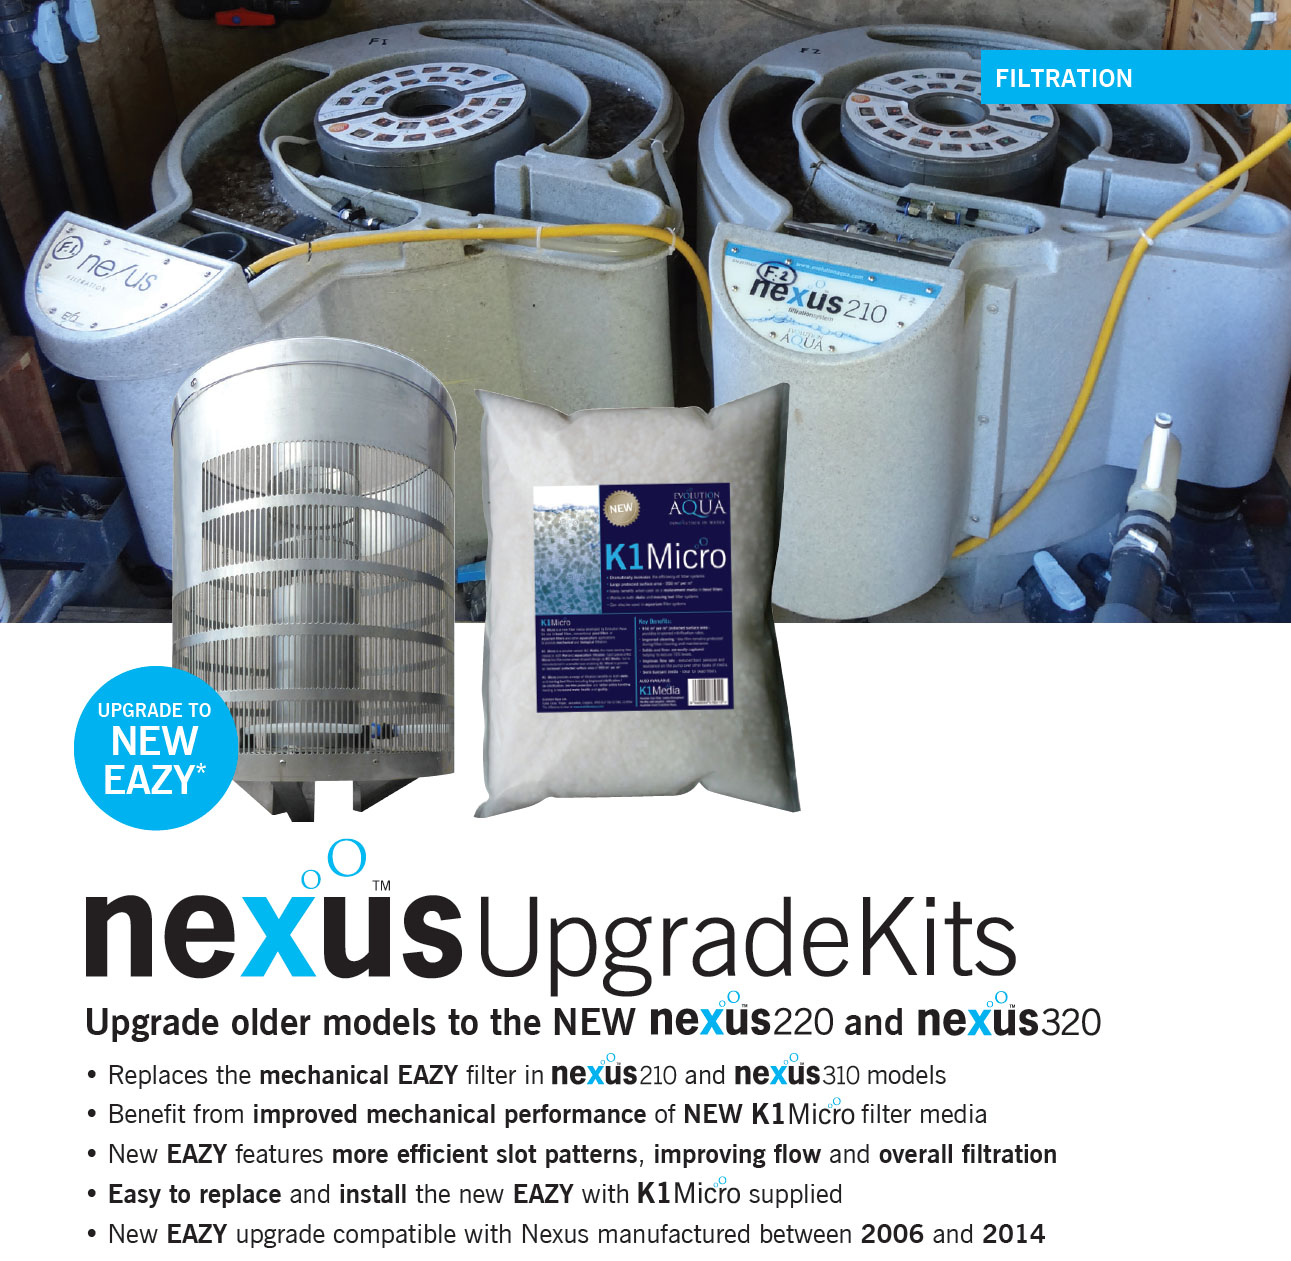 nexus upgrade kit, informace